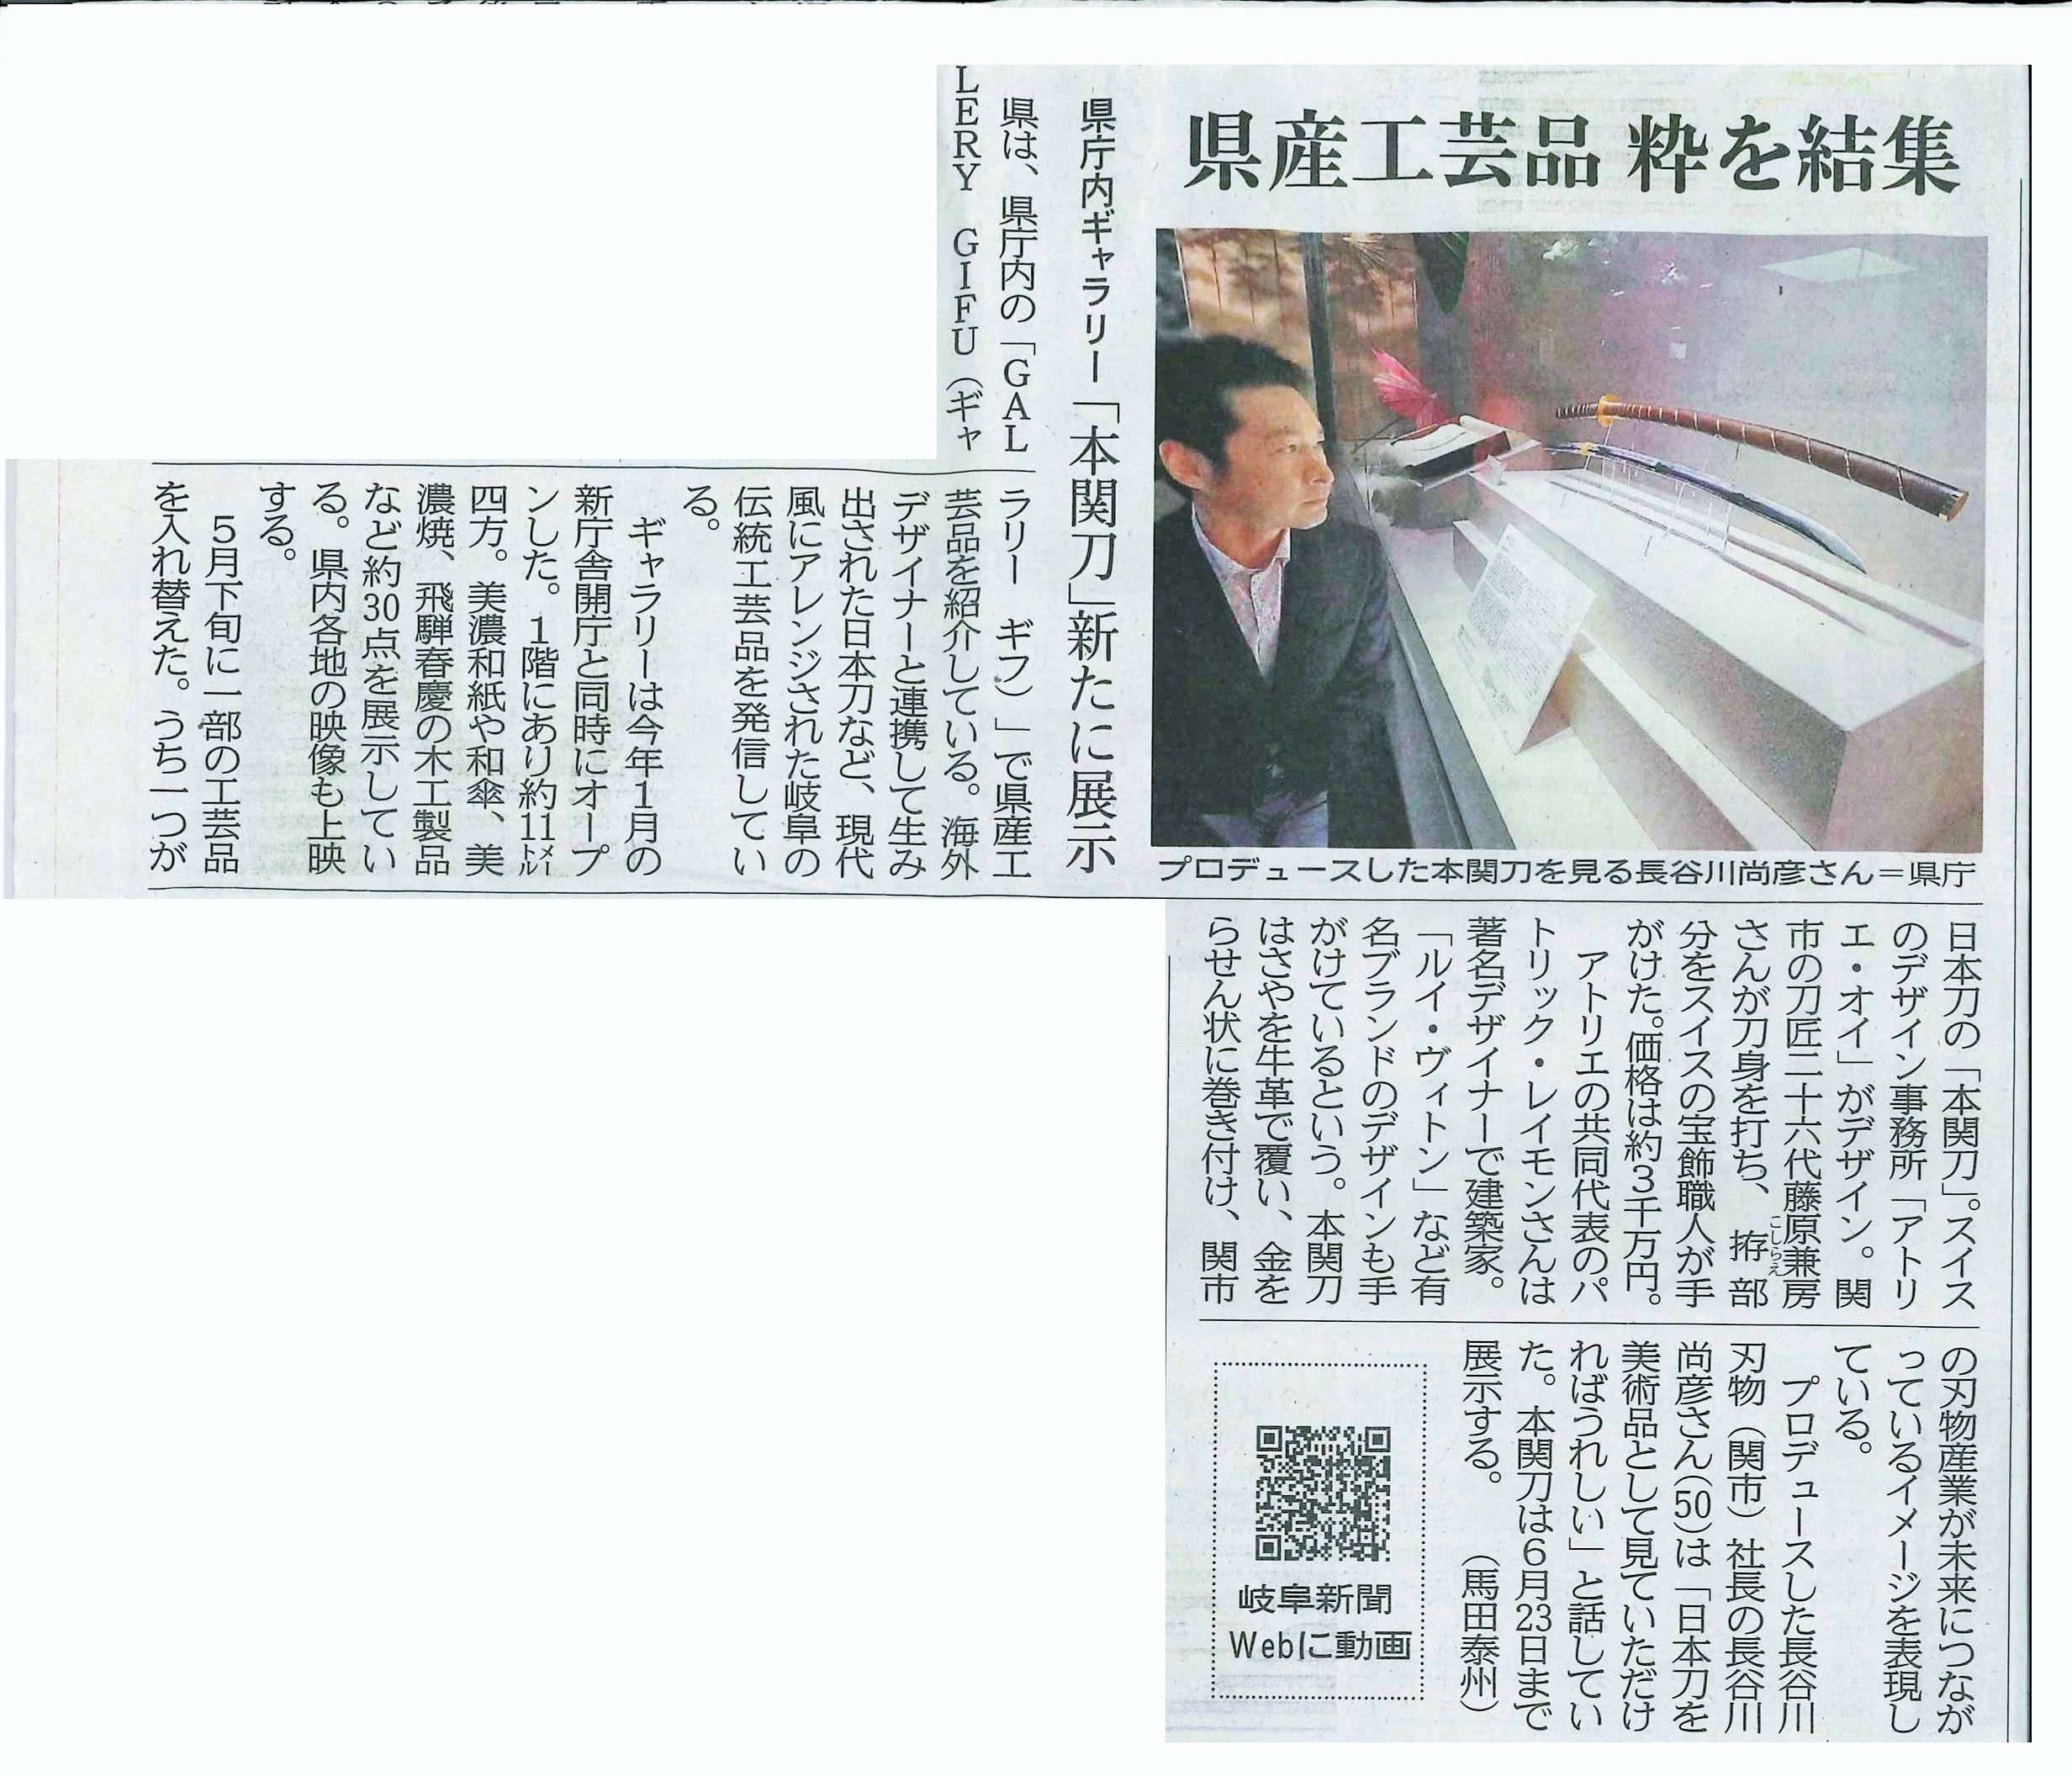 【イベント】『本関刀』の展示開始について岐阜新聞に掲載されました